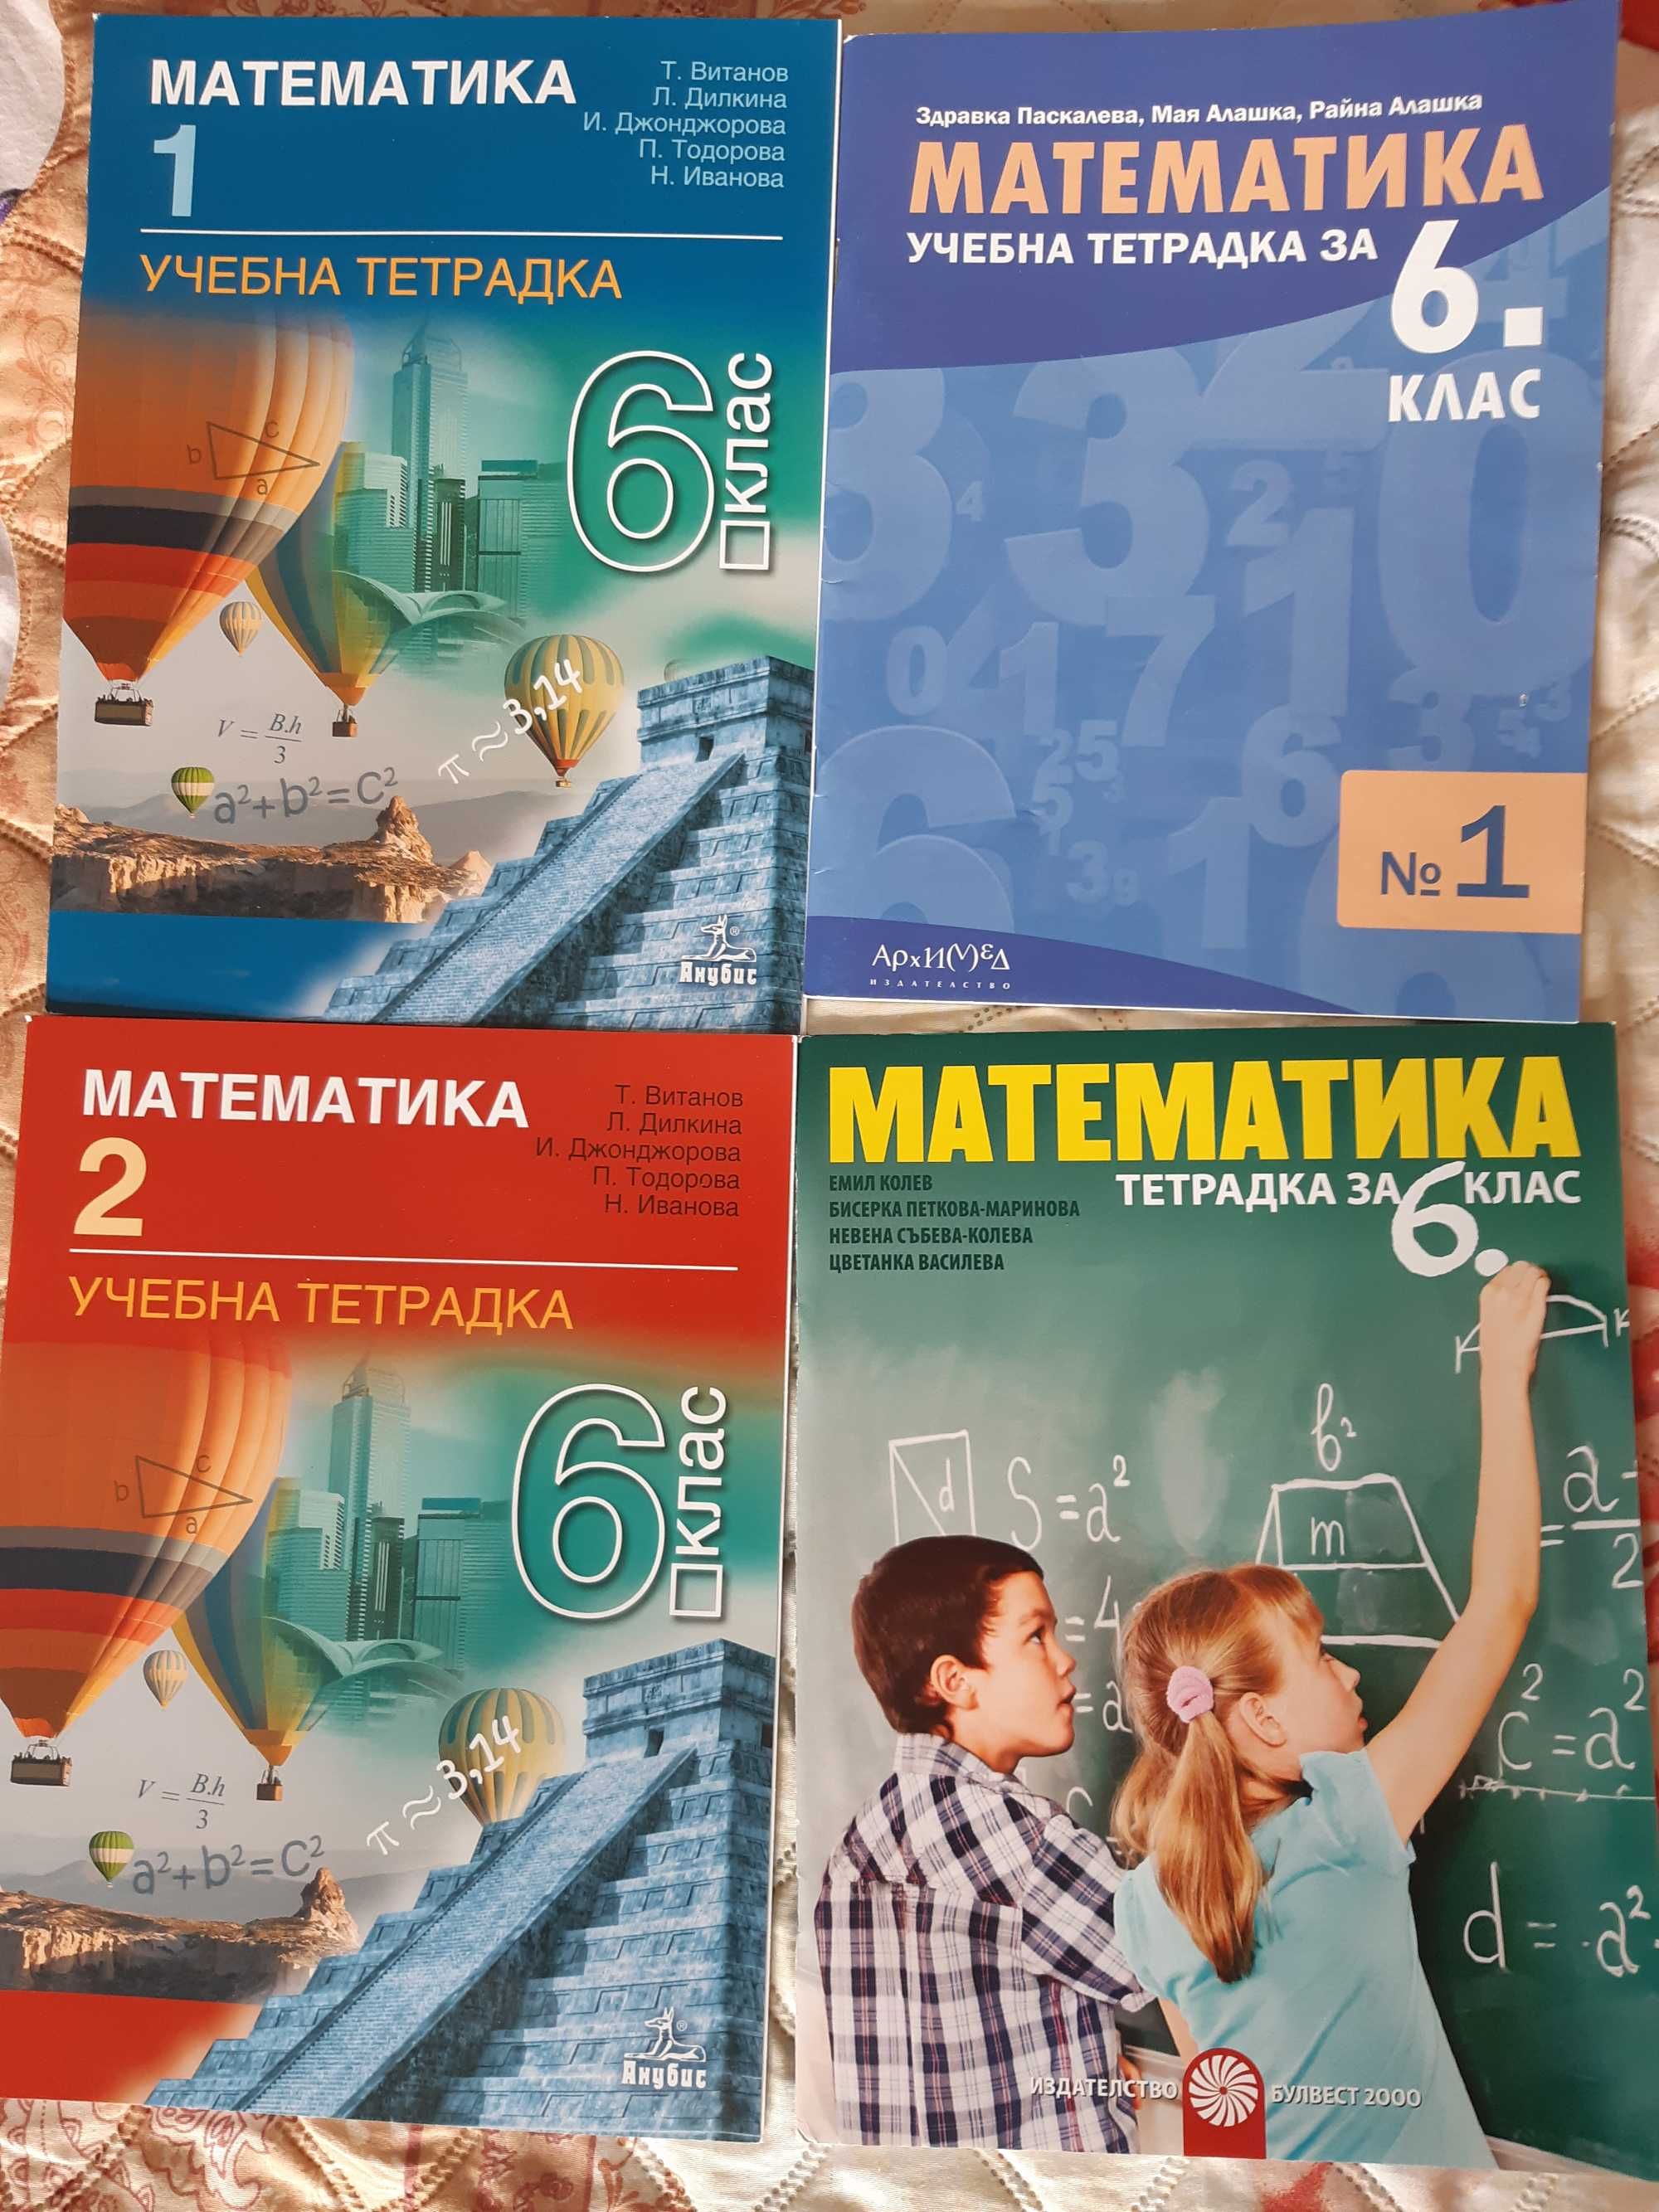 Учебници, тетрадки, сборник по математика и ИТ 5, 6 и 7 клас